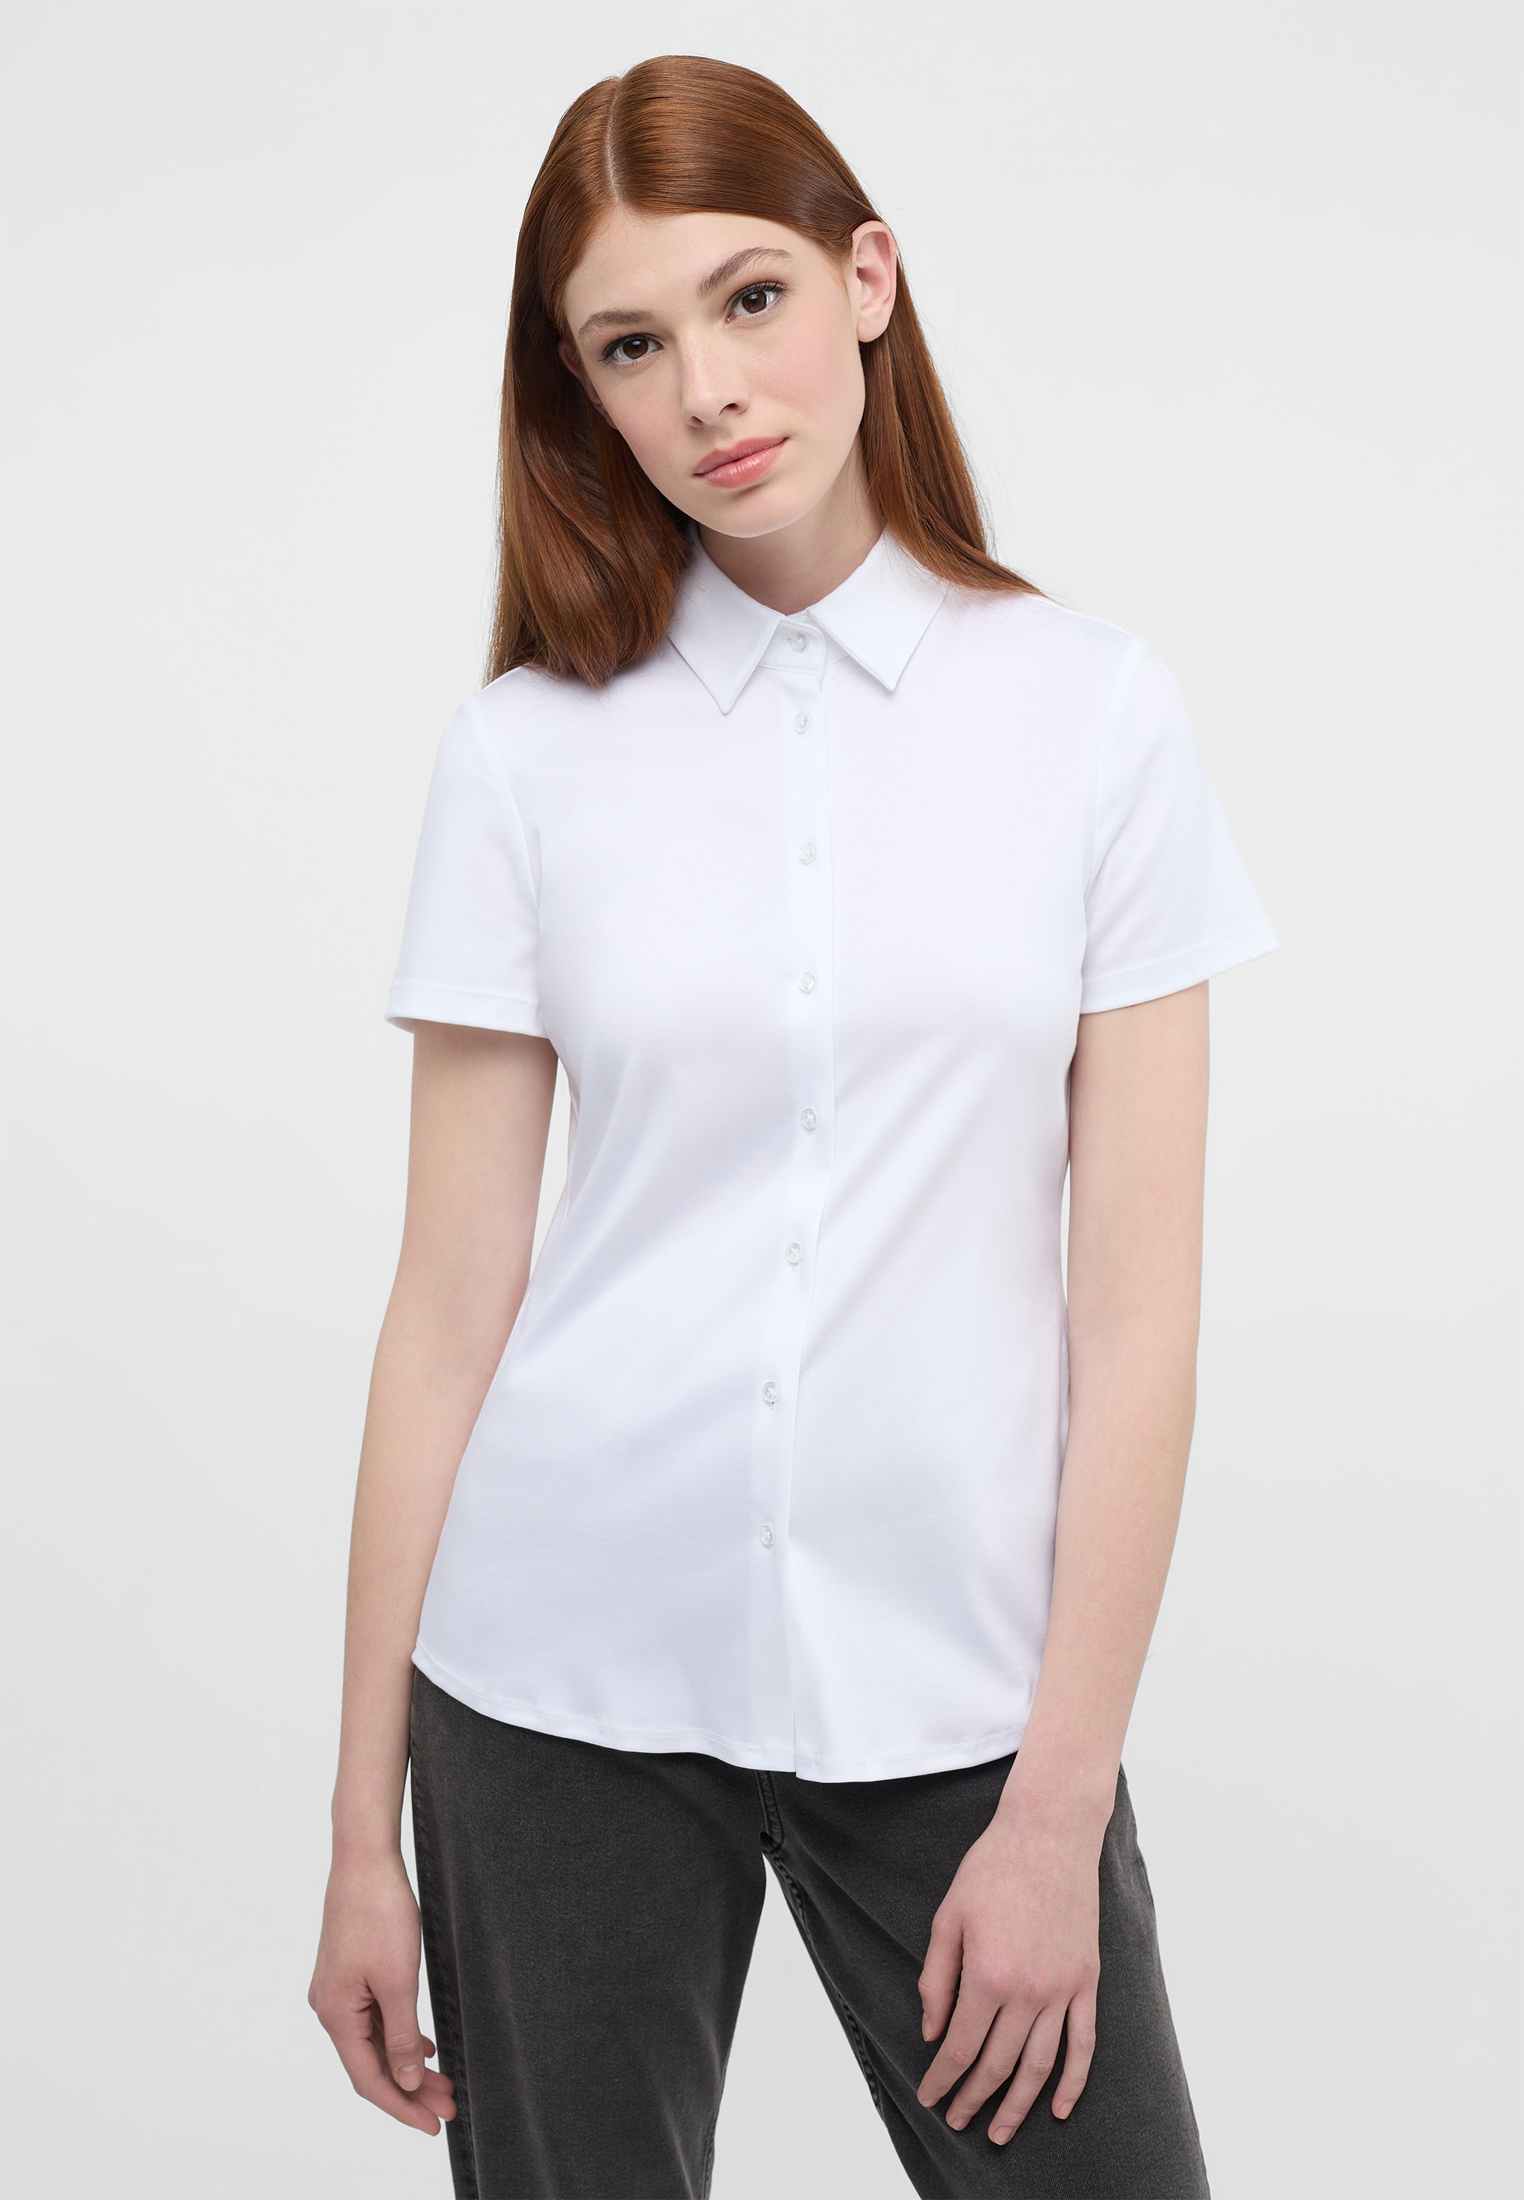 Jersey Shirt Blouse plain | 2BL04293-00-01-44-1/2 short sleeve | white 44 | in | white